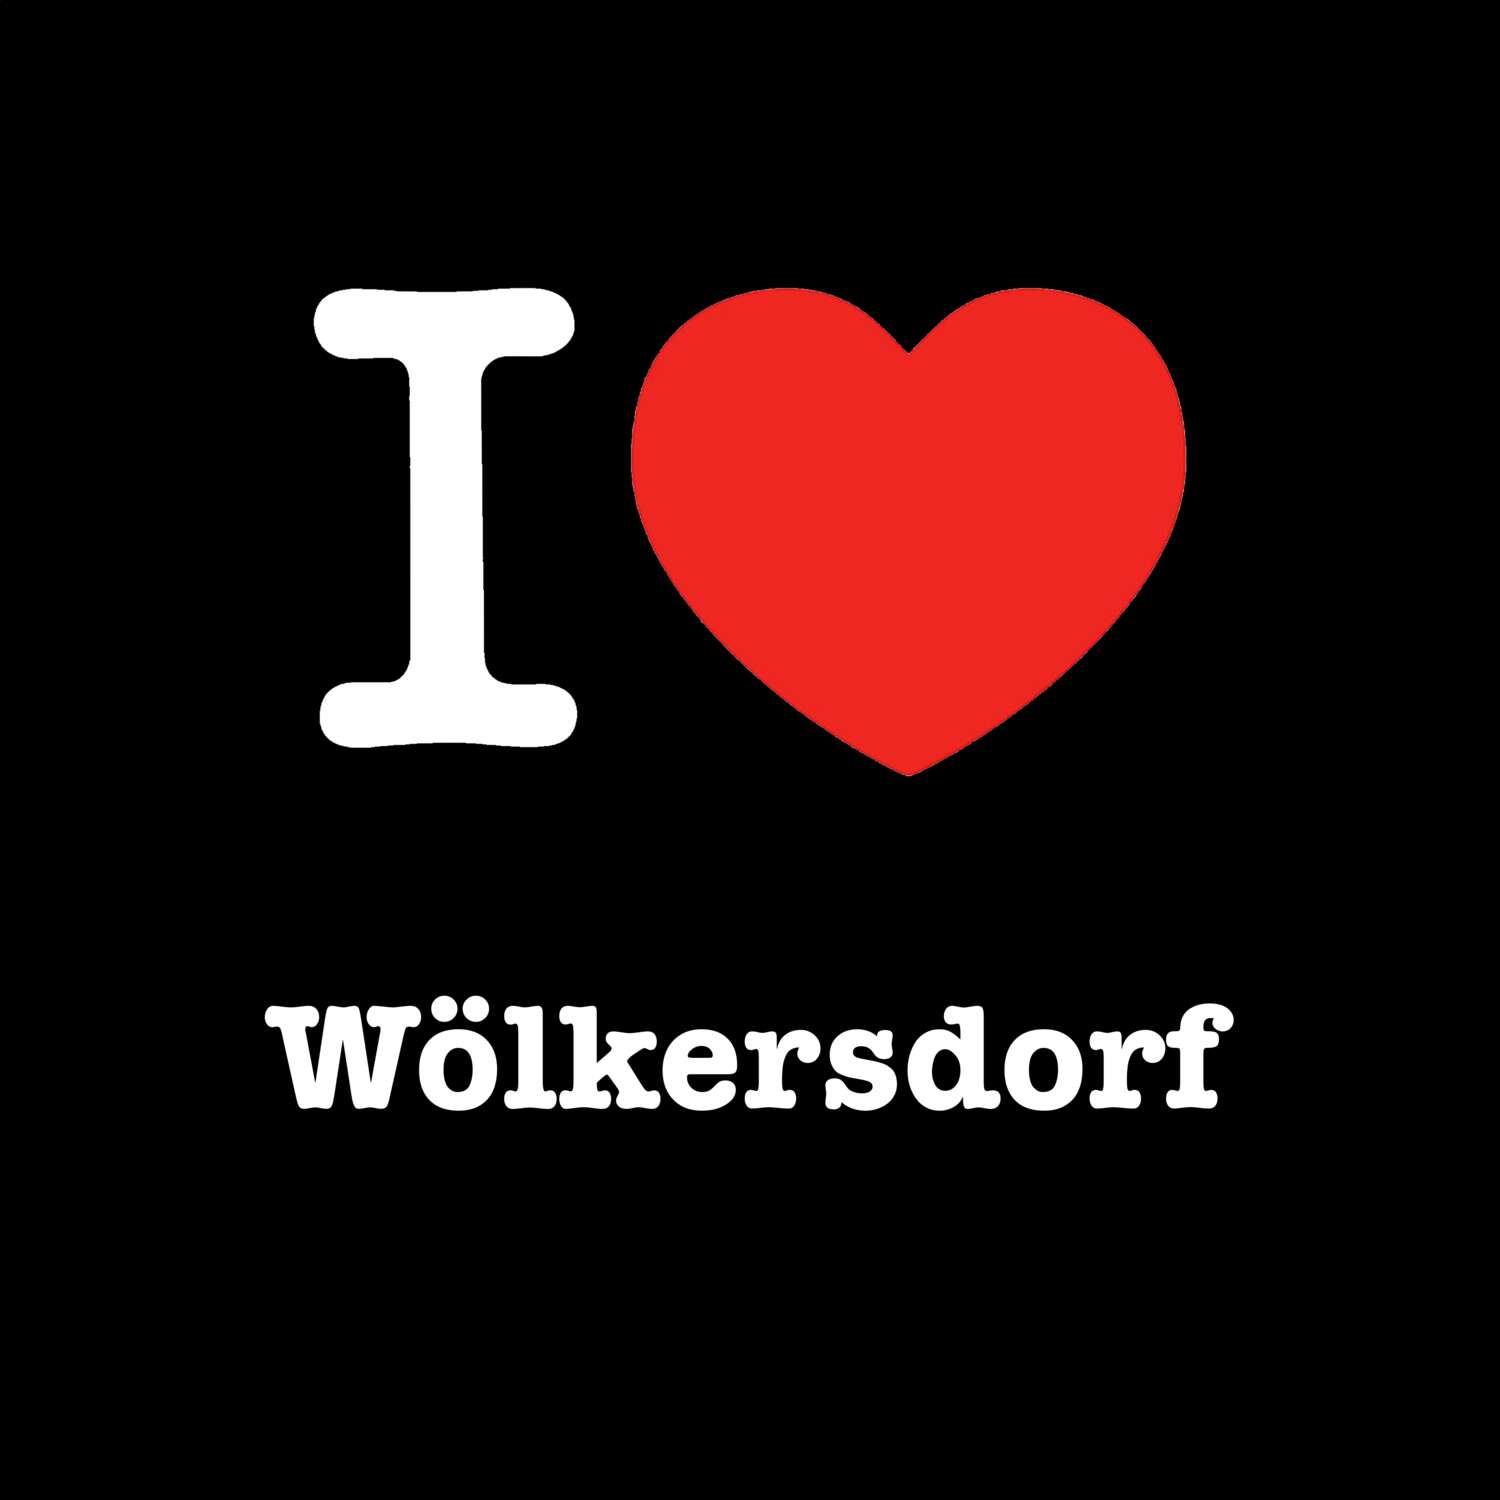 Wölkersdorf T-Shirt »I love«